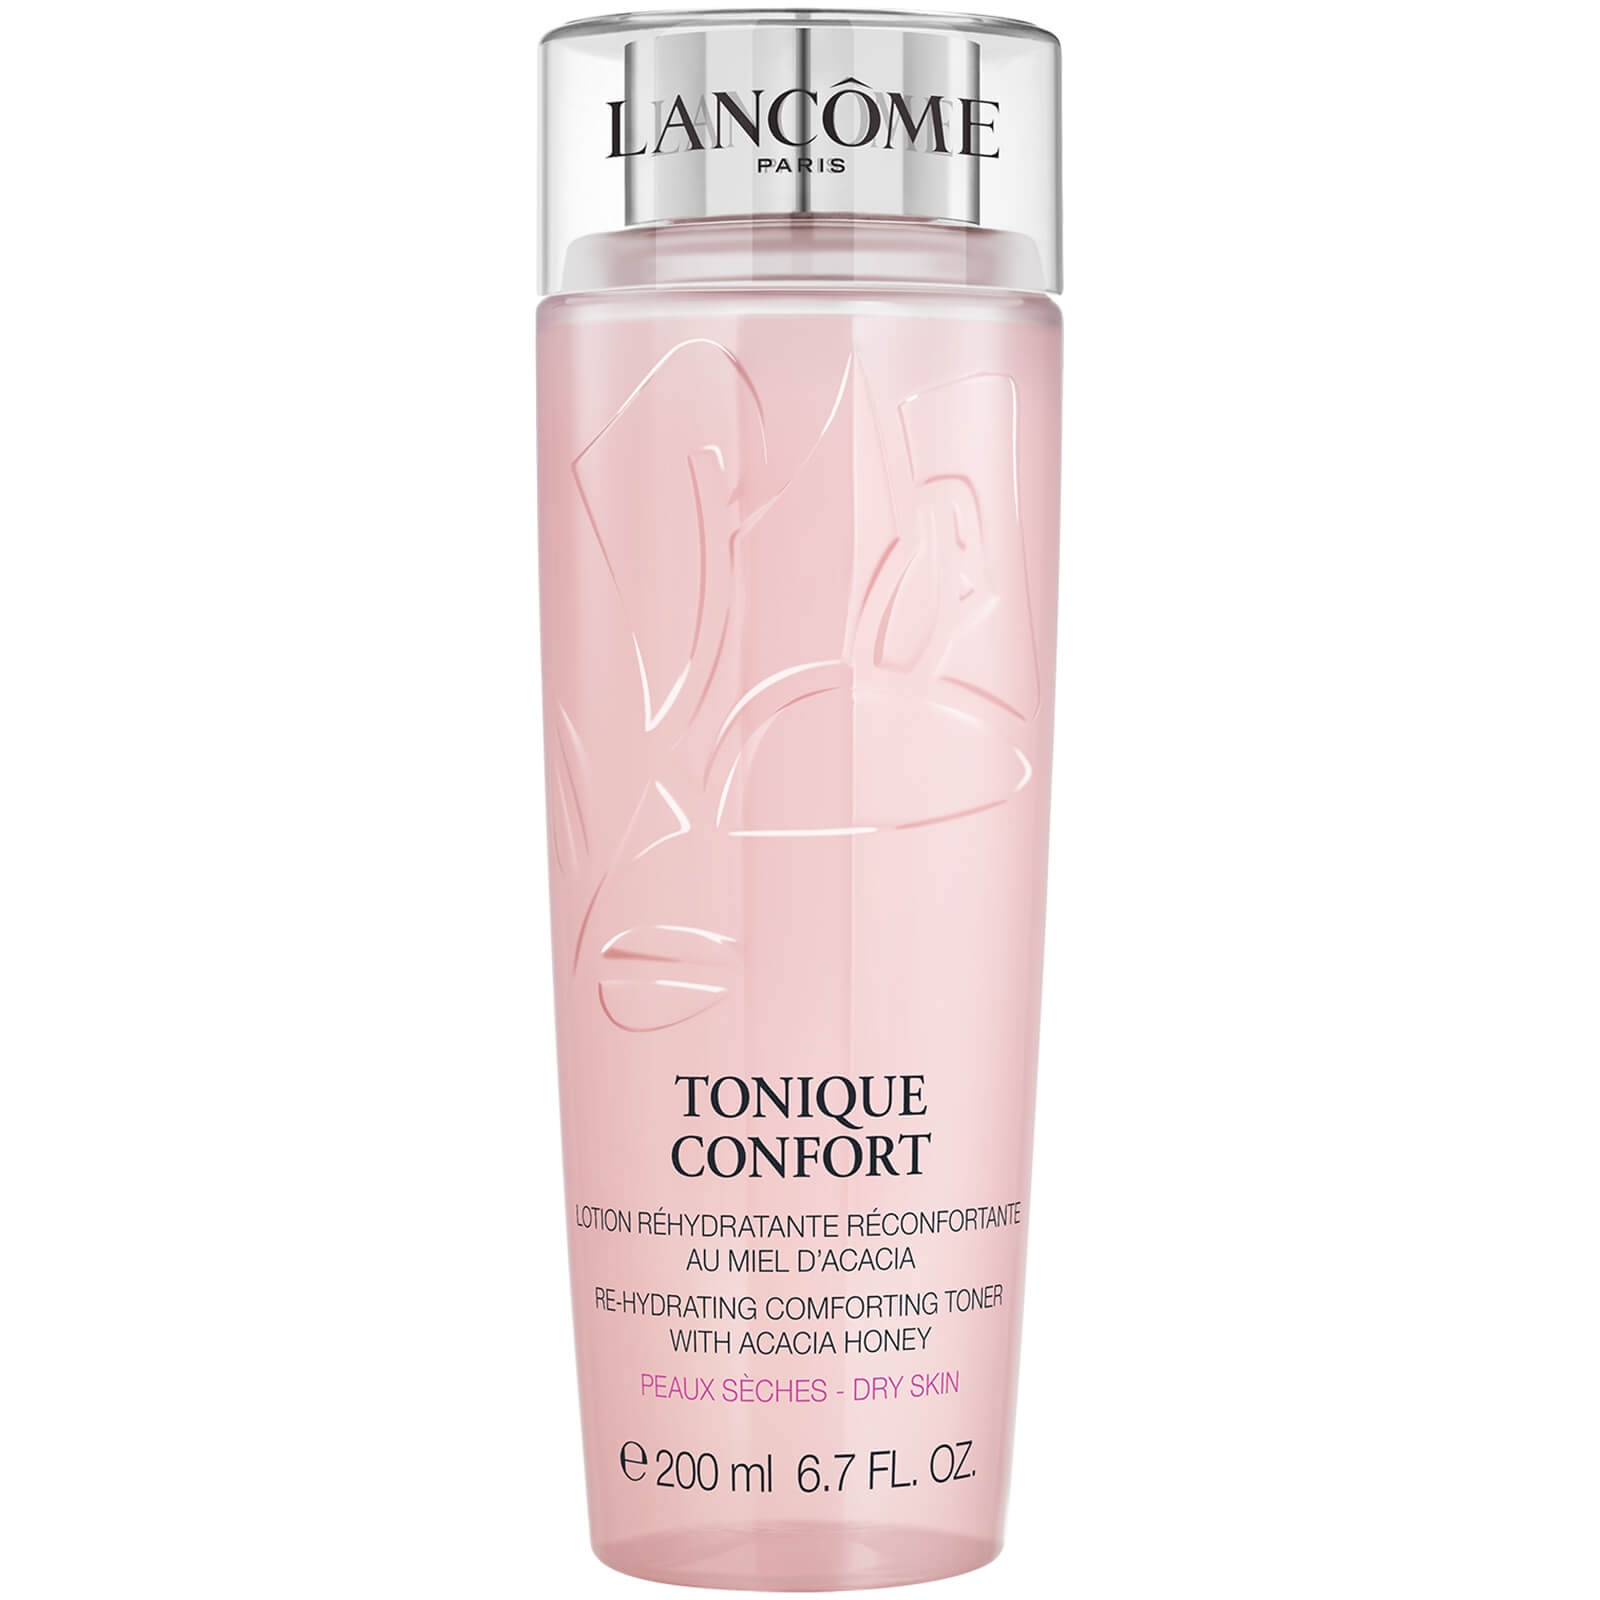 Lancome Tonique Confort Toner - 200ml